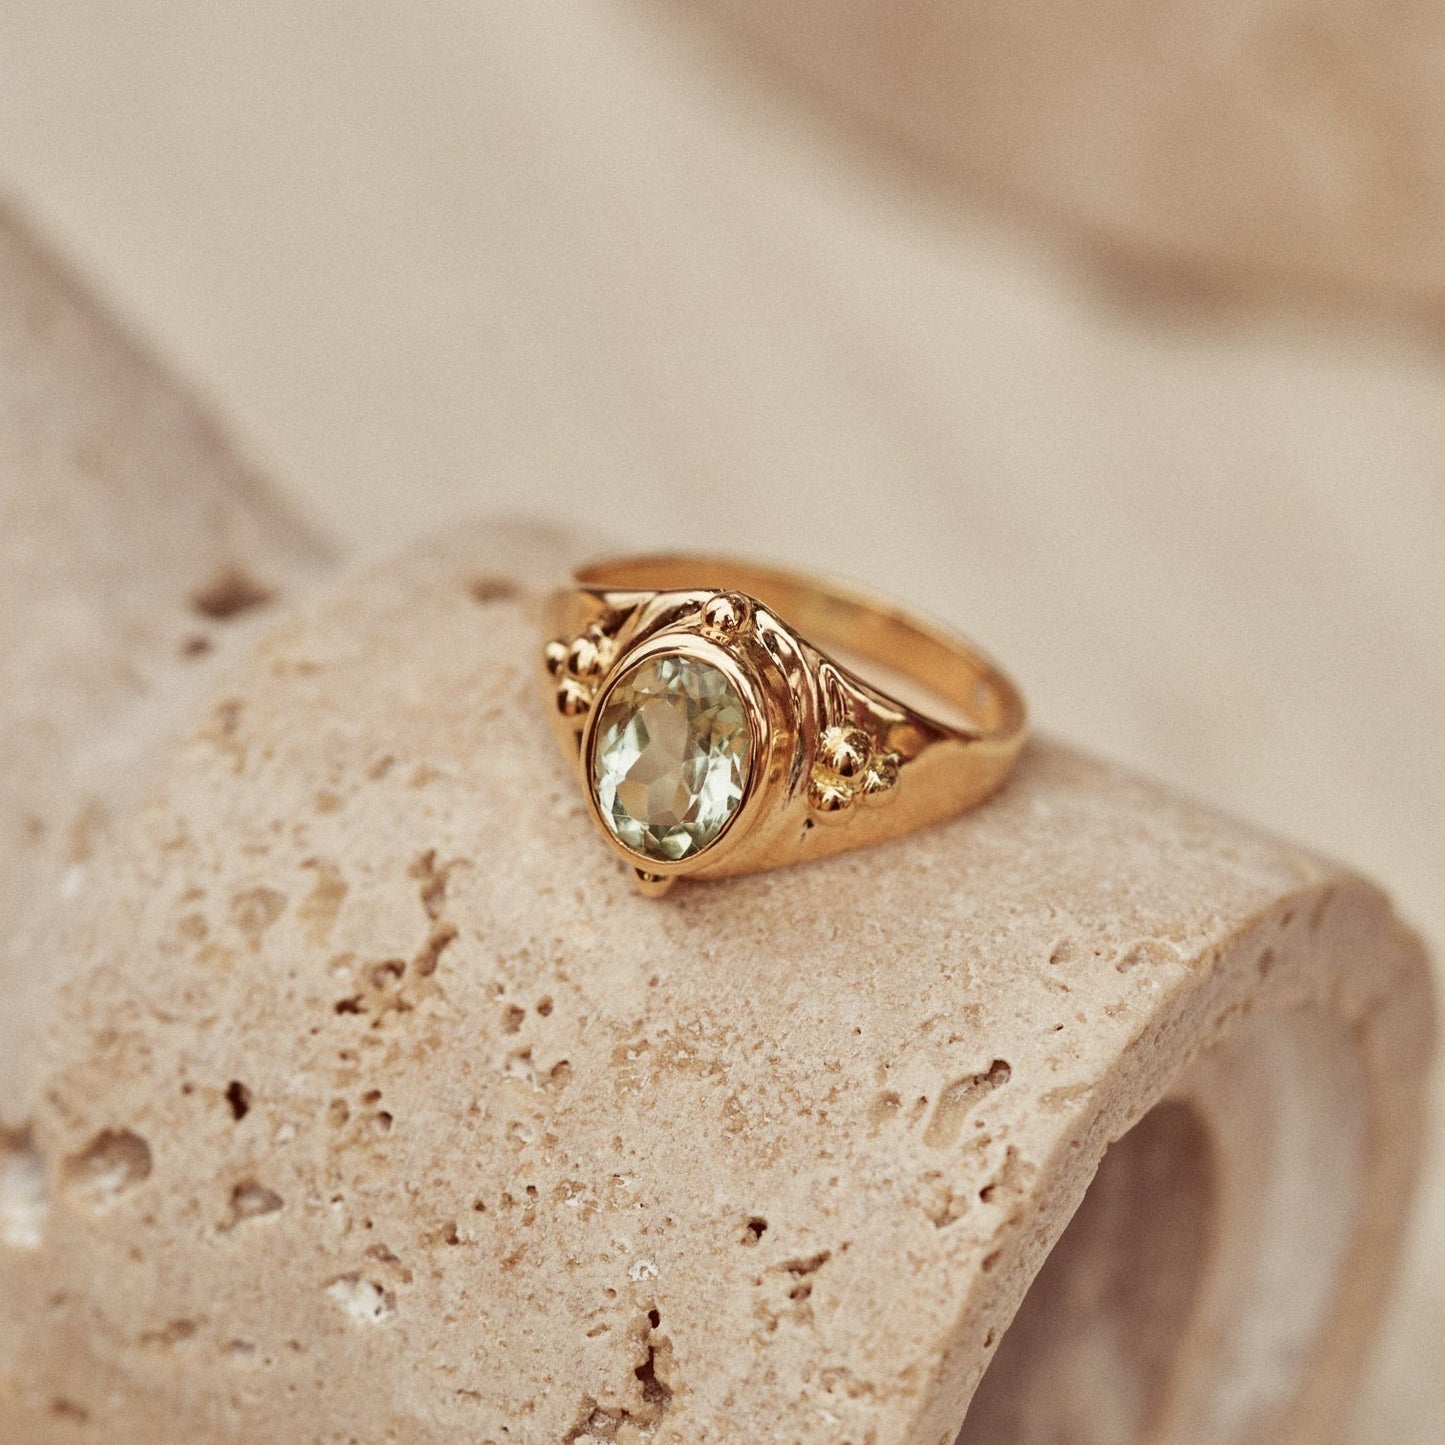 Detalle macro del anillo Ophelia donde se muestra su diseño decorado con bolitas de oro y su preciosa prasiolita.